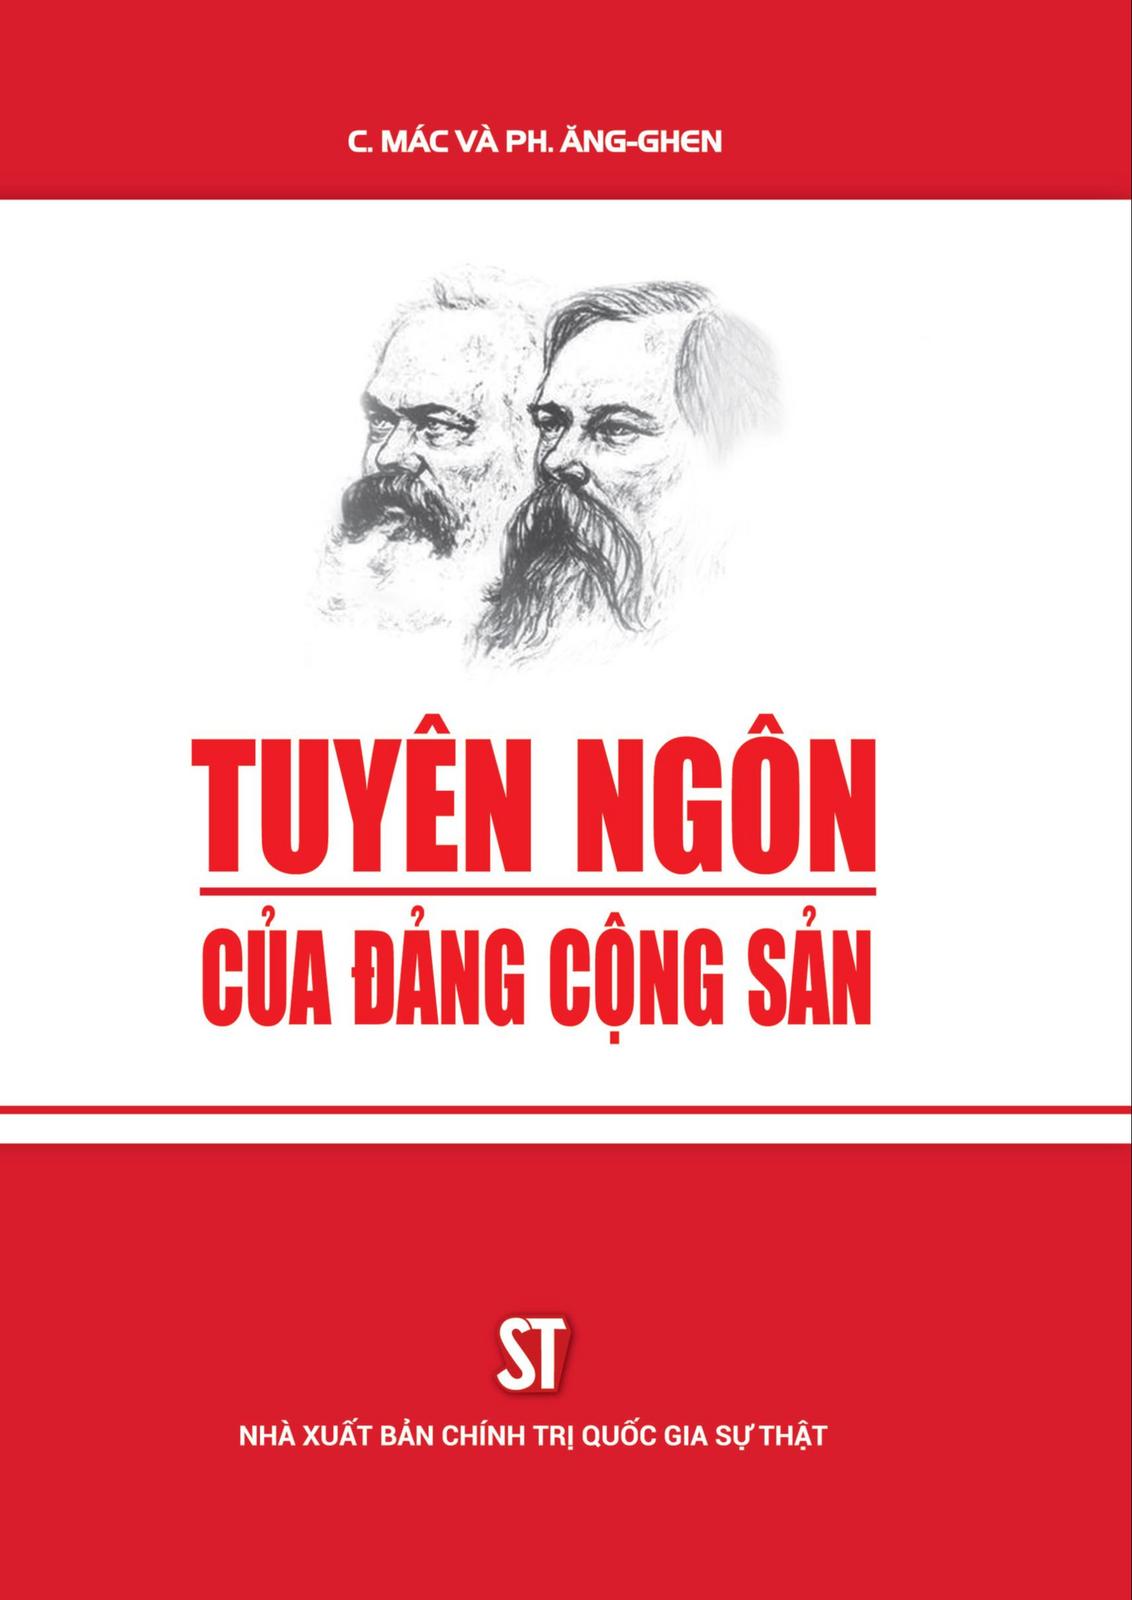 Karl Marx, Friedrich Engels: TUYÊN NGÔN CỦA ĐẢNG CỘNG SẢN (Vietnamese language, 2017)